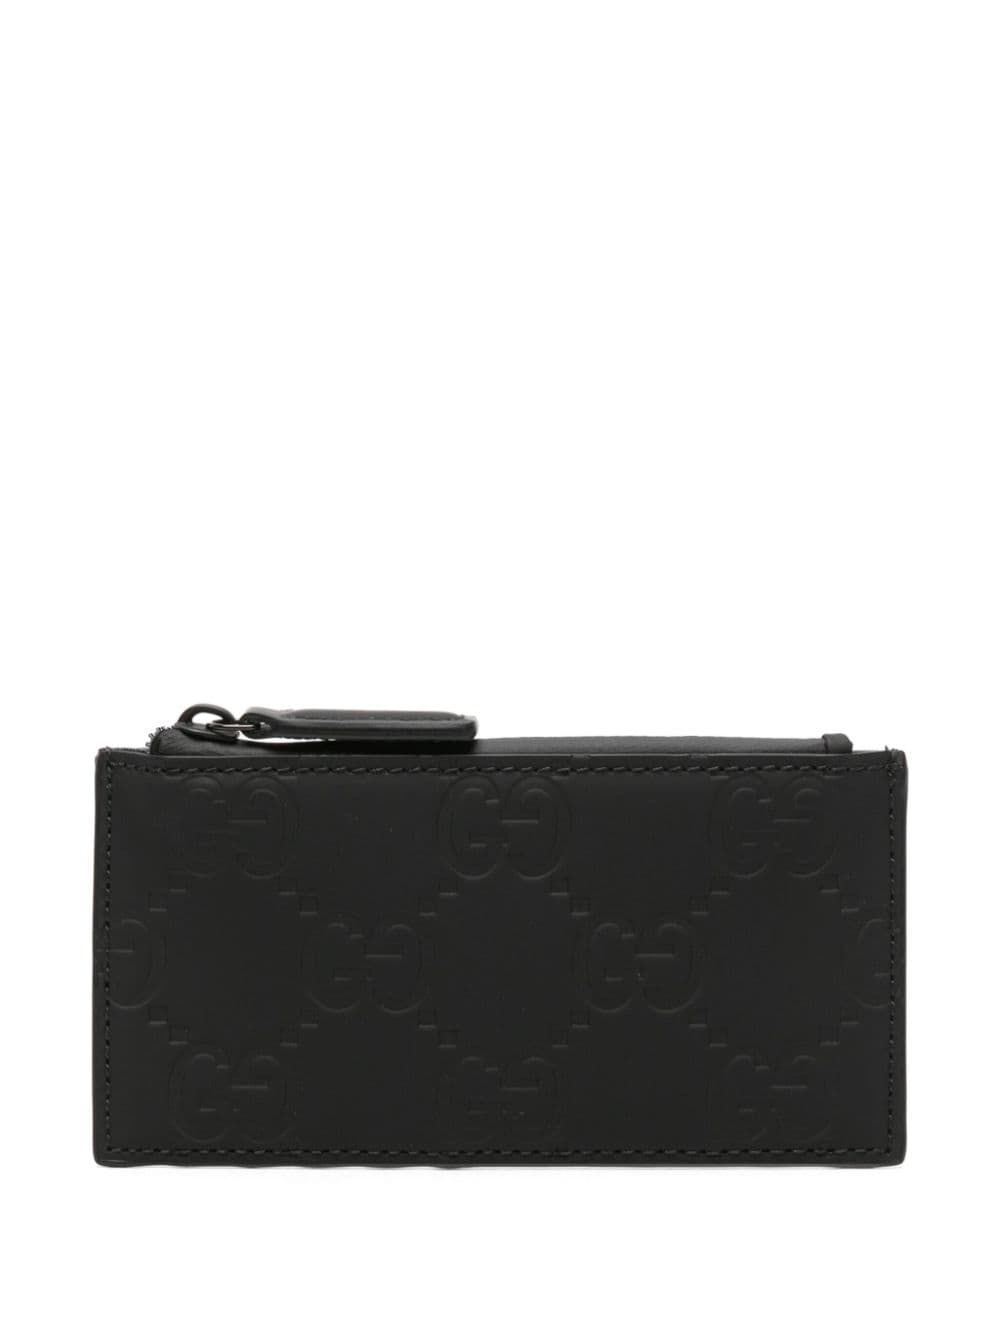 Gucci GG Supreme rectangle cardholder - Black von Gucci